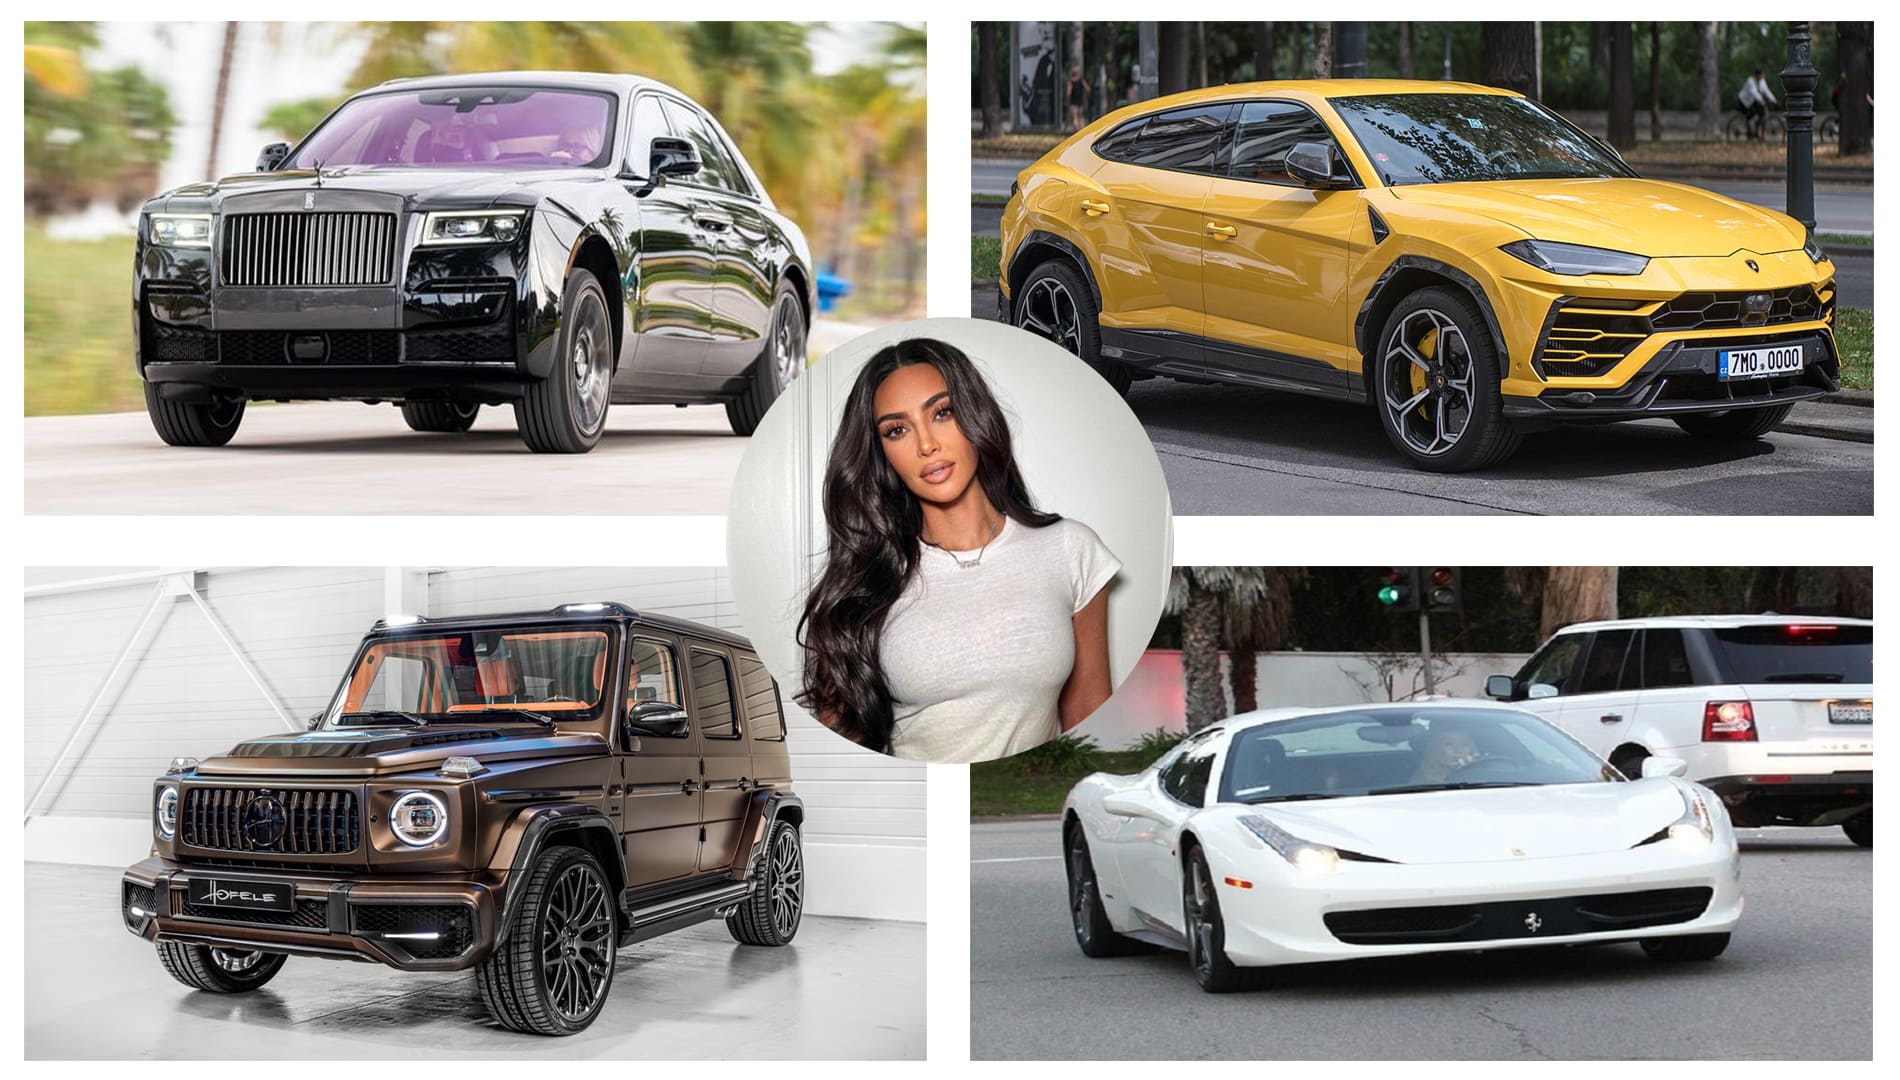 Kim Kardashian's car collection